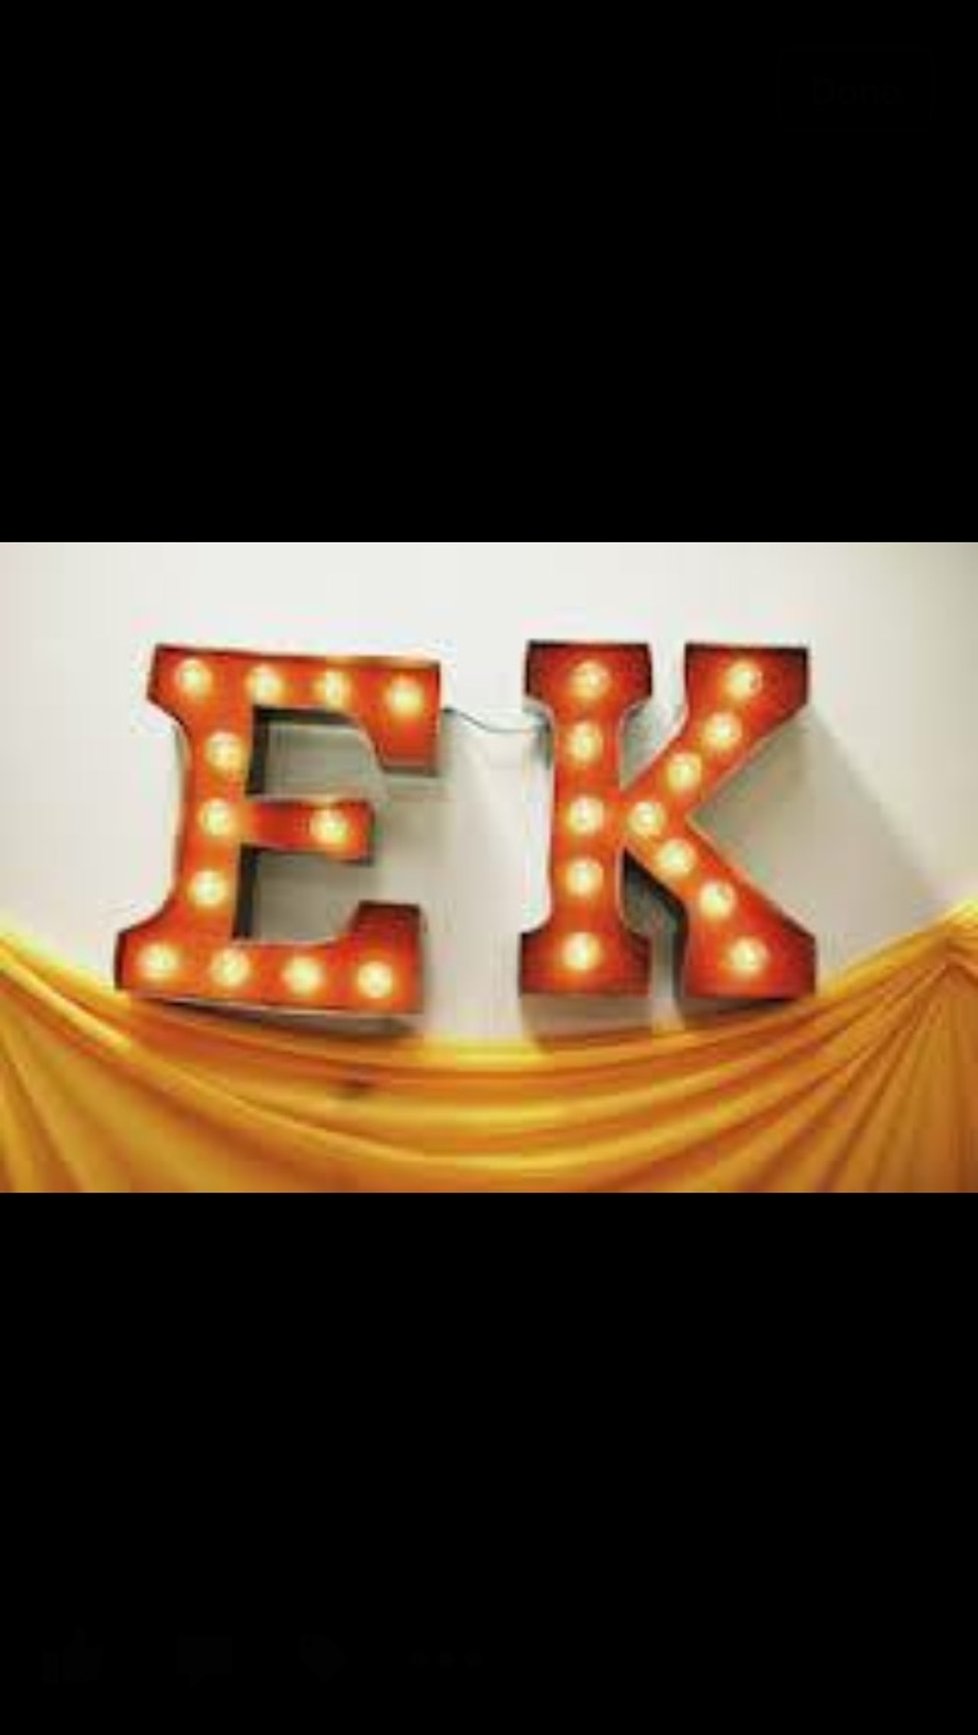 E-K Uniques